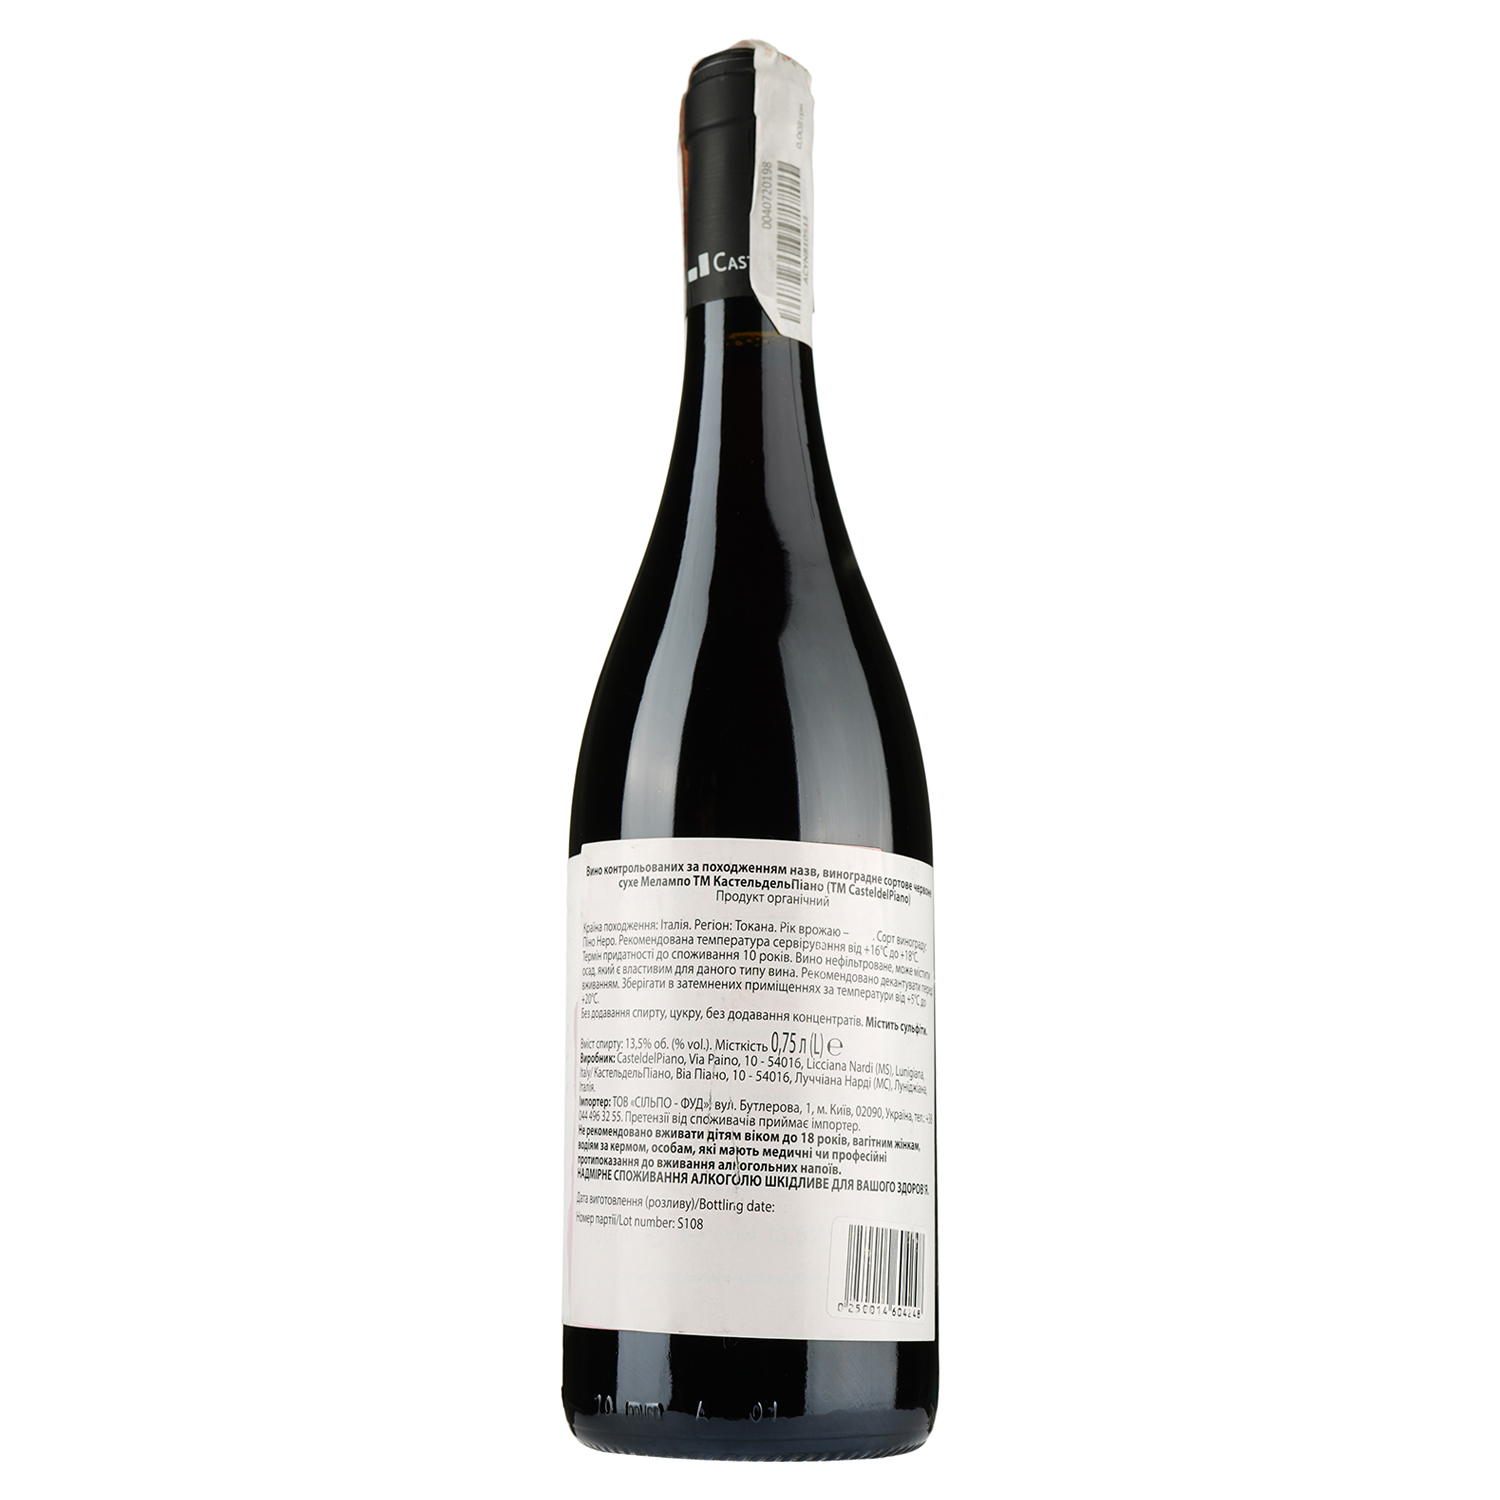 Вино Castel del Piano Melampo Pinot Noir 2017 IGT, красное, сухое, 13,5%, 0,75 л (890029) - фото 2